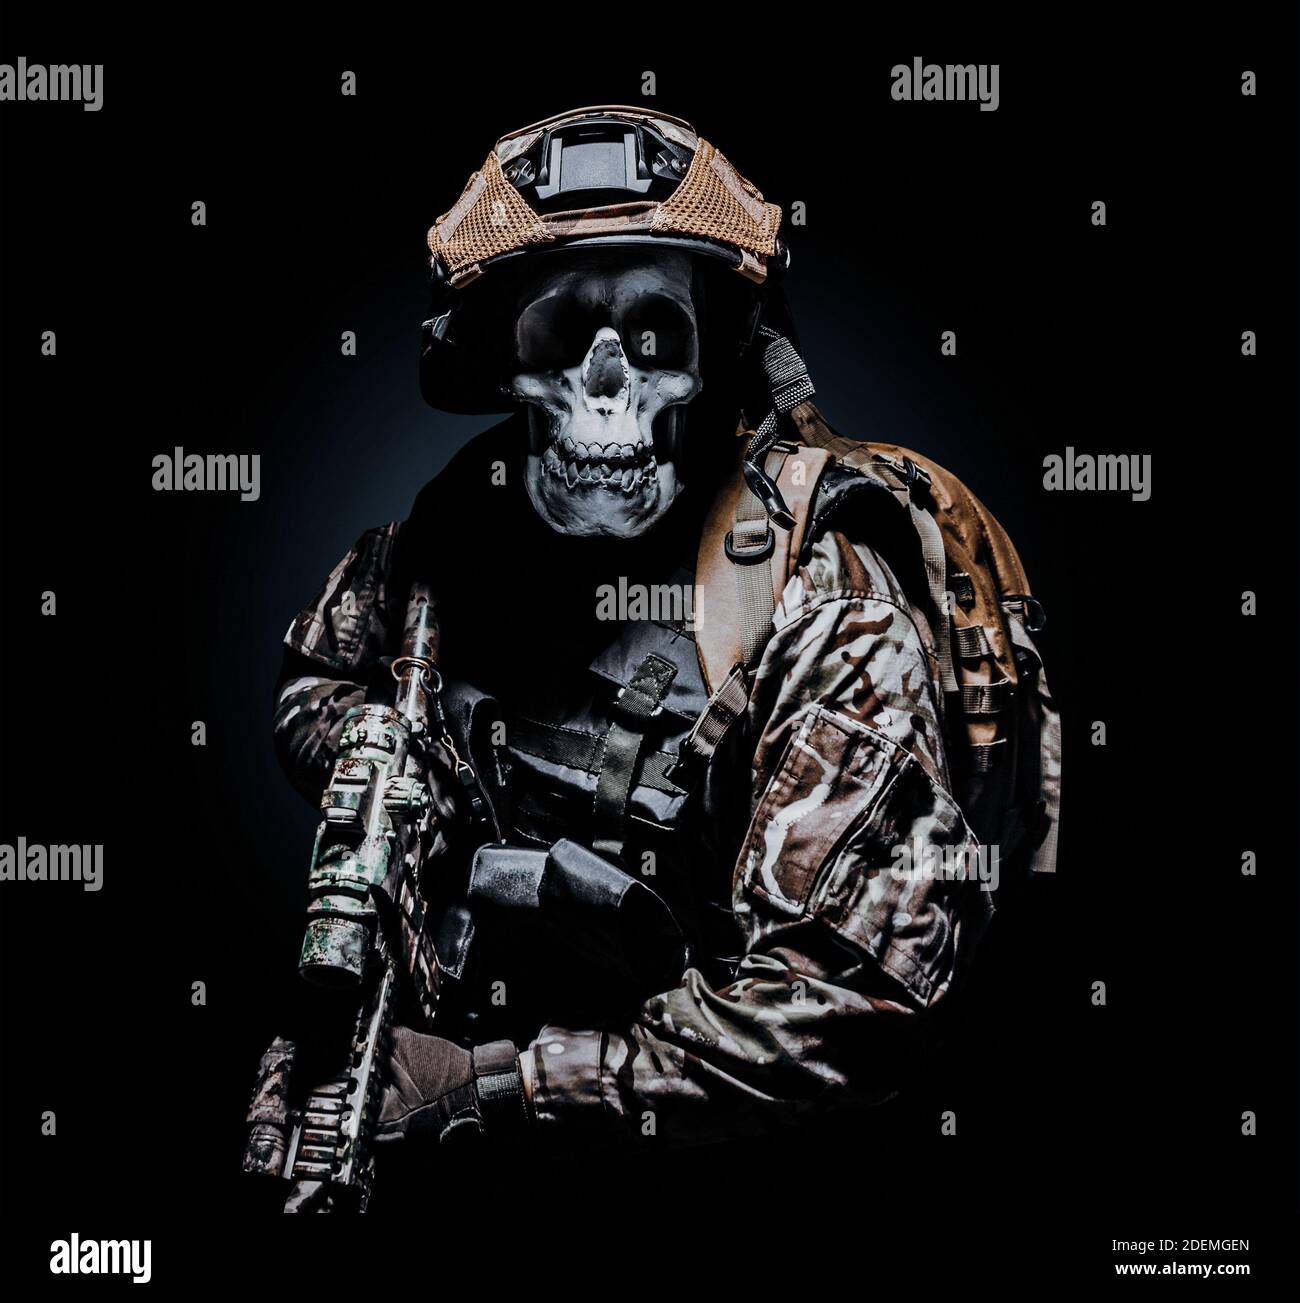 Foto von einem voll ausgestatteten Skelett Zombie Soldat in gepanzerter  Weste stehen und halten Gewehr auf schwarzem Hintergrund Stockfotografie -  Alamy